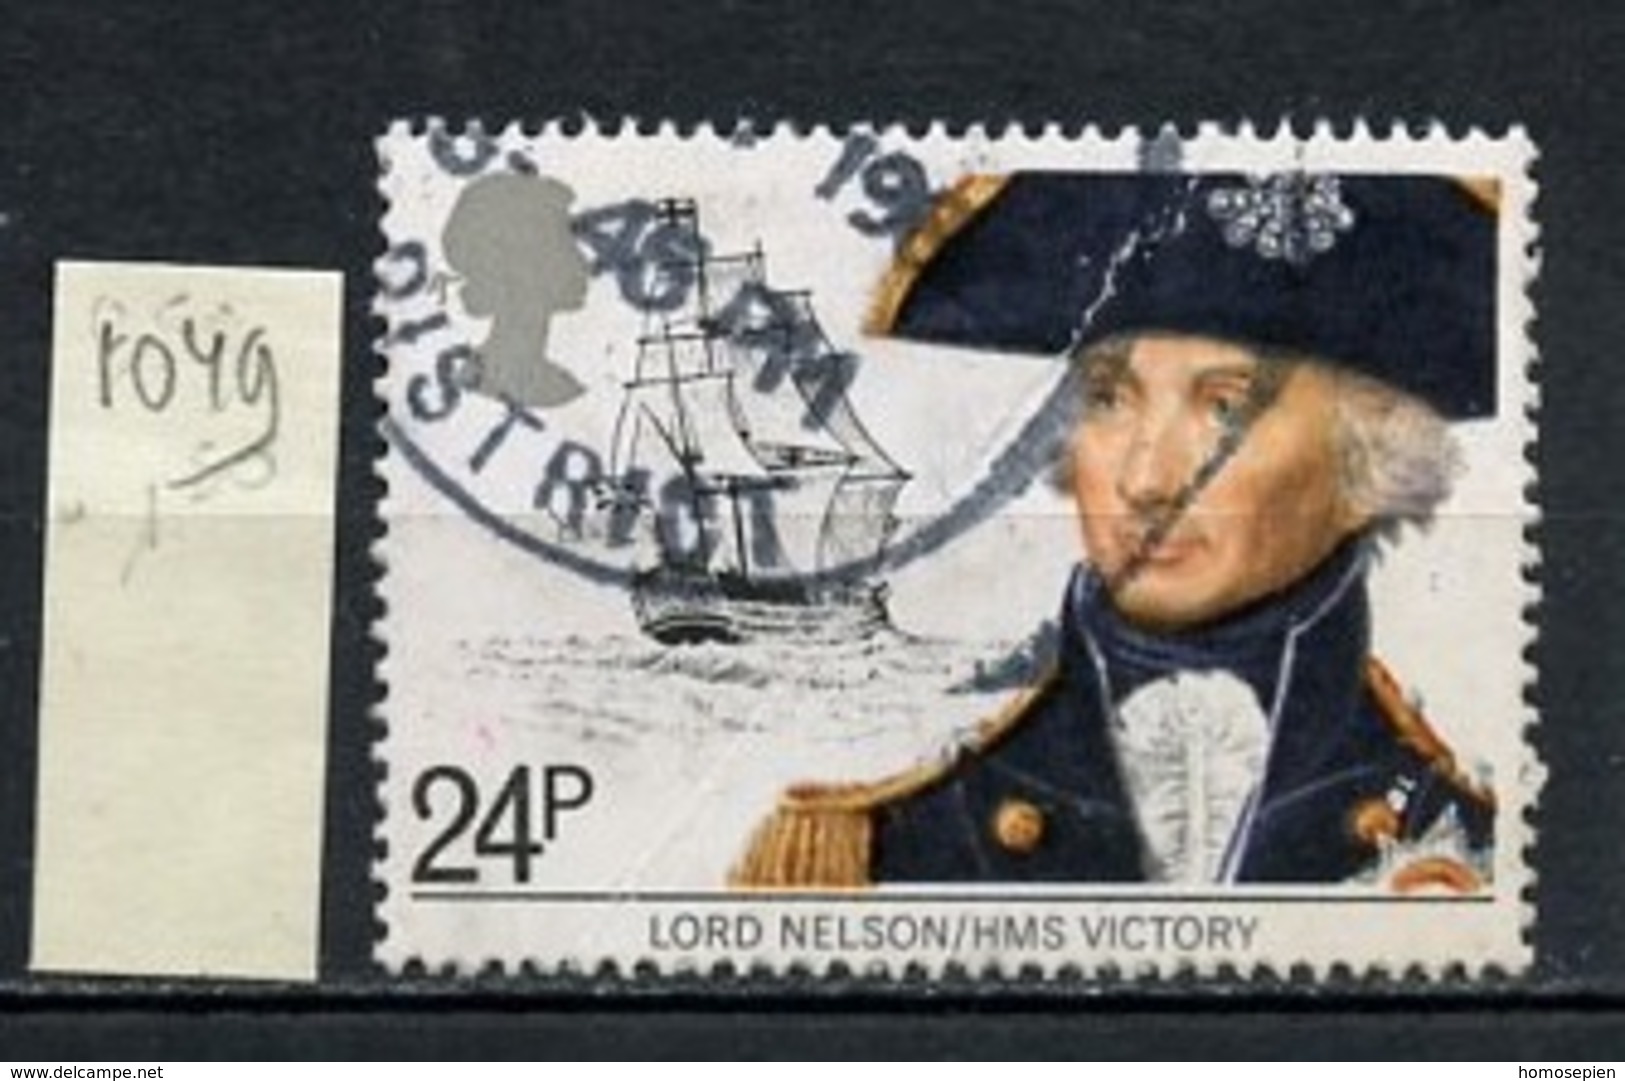 Grande Bretagne - Great Britain - Großbritannien 1982 Y&T N°1049 - Michel N°920 (o) - 24p Lord Nelson - Used Stamps